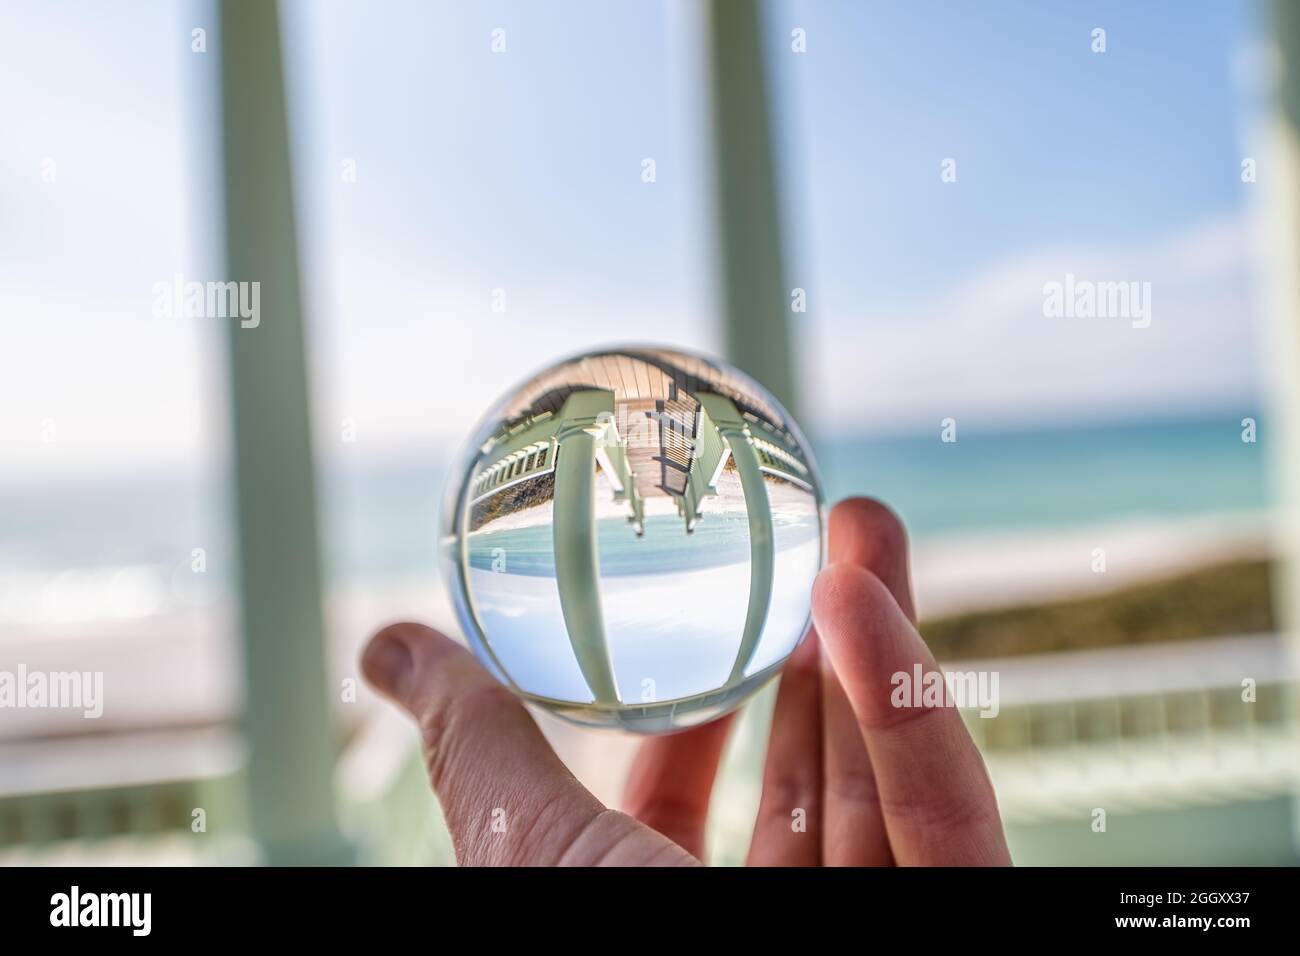 Seaside, Florida mit Hand halten Lensball Kristall Glaskugel mit Reflexion der grünen hölzernen Pavillon Pavillon Architektur am Strand Ozean in verschwommen b Stockfoto